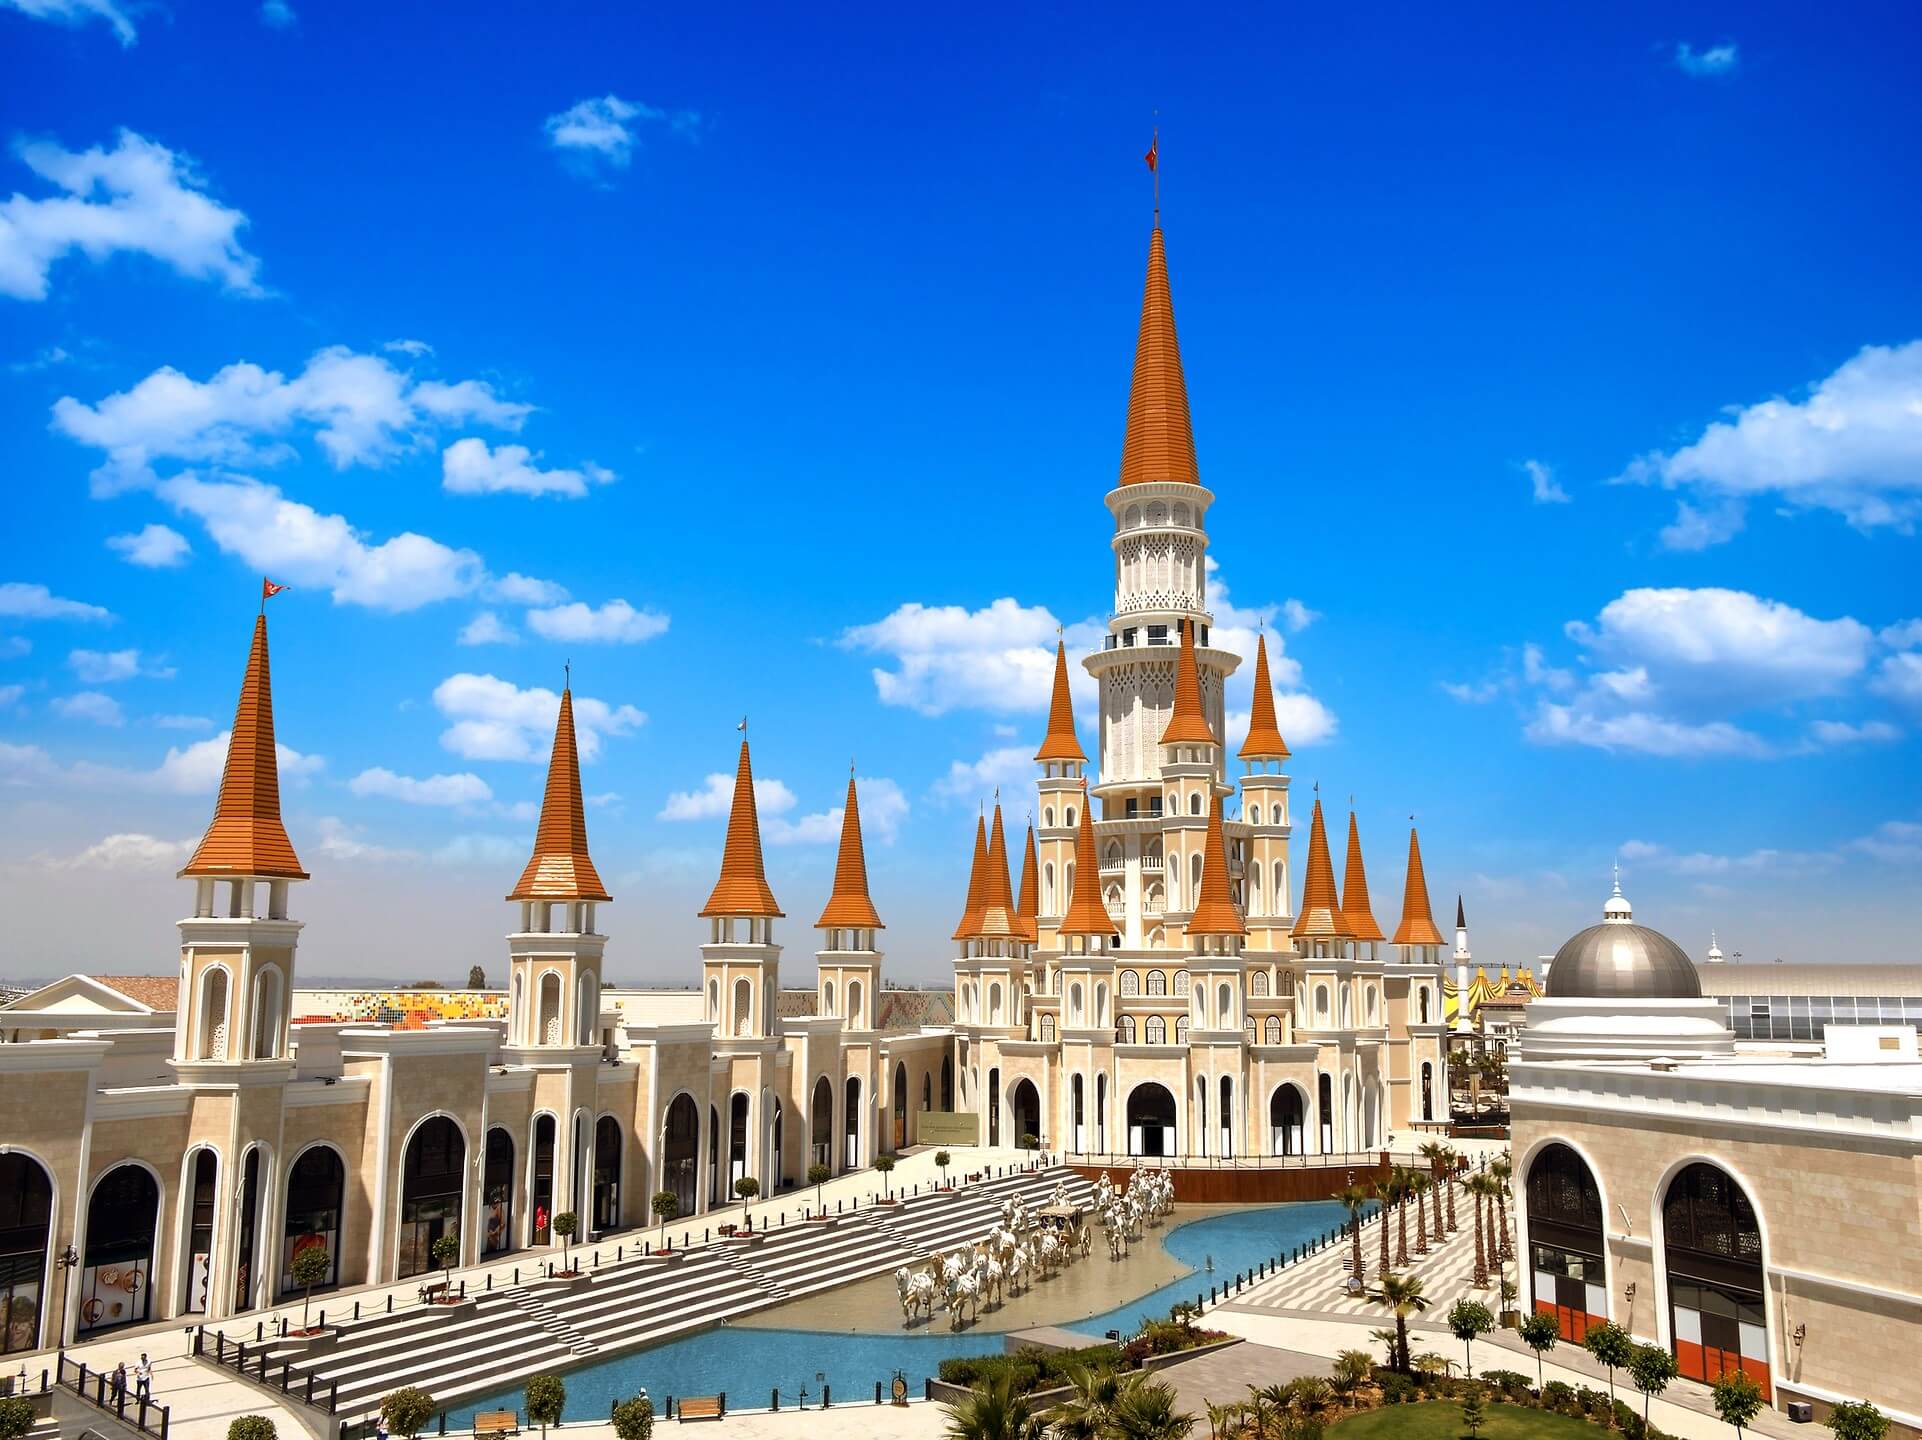 أفضل شركات السياحة في تركيا: تقديم خدمات متميزة للعرب المسافرون